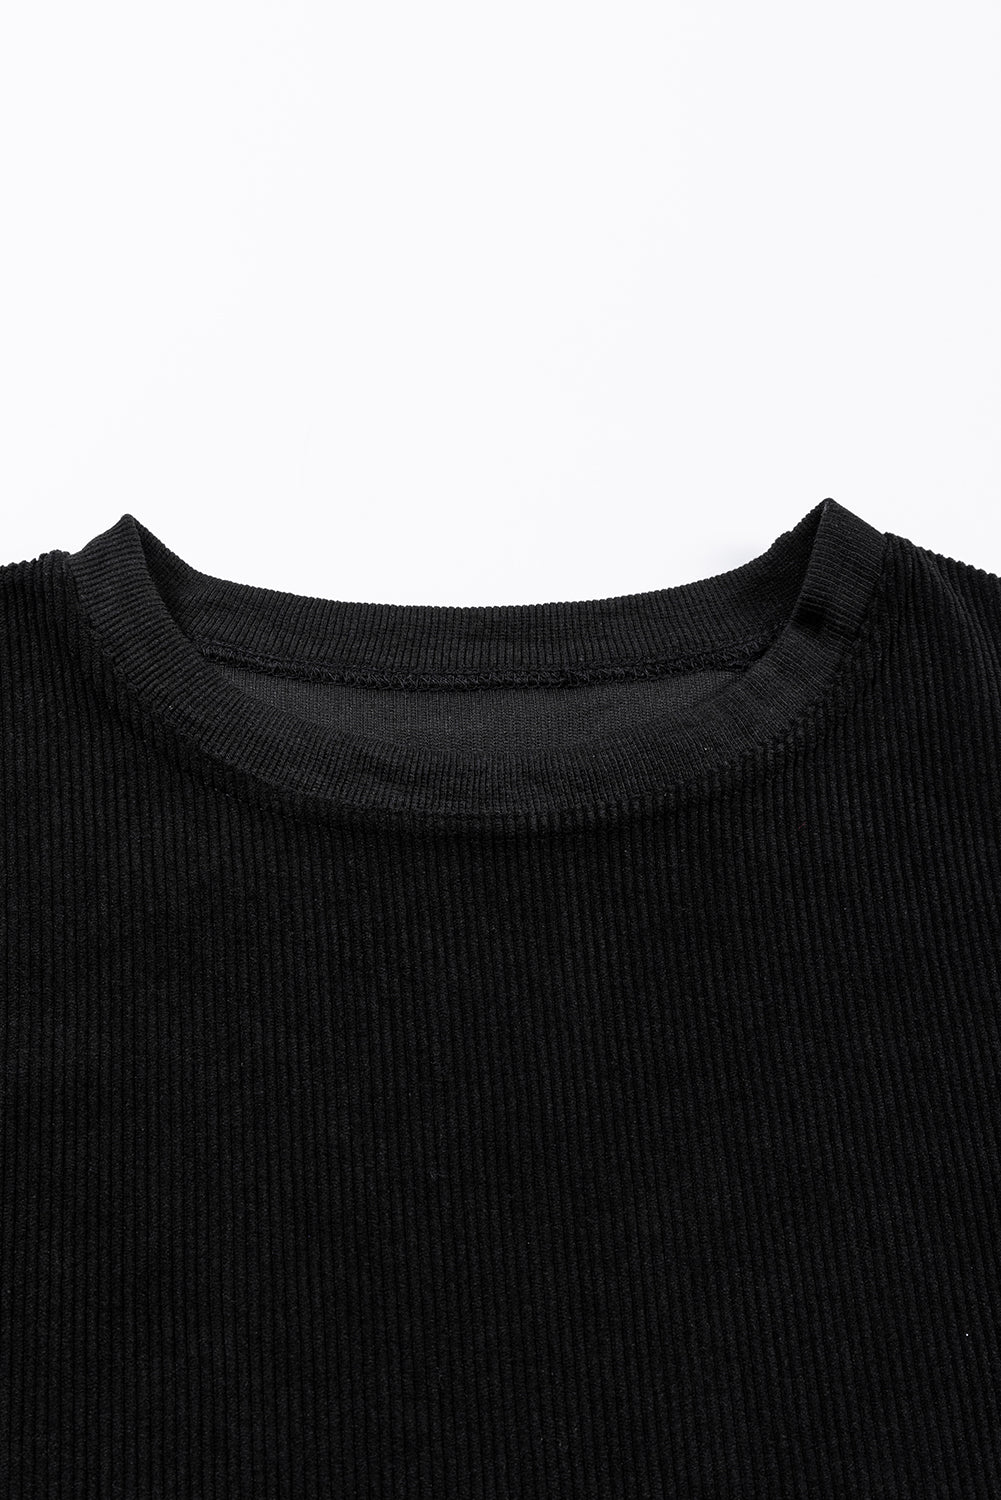 Sweat-shirt surdimensionné noir côtelé en cordon